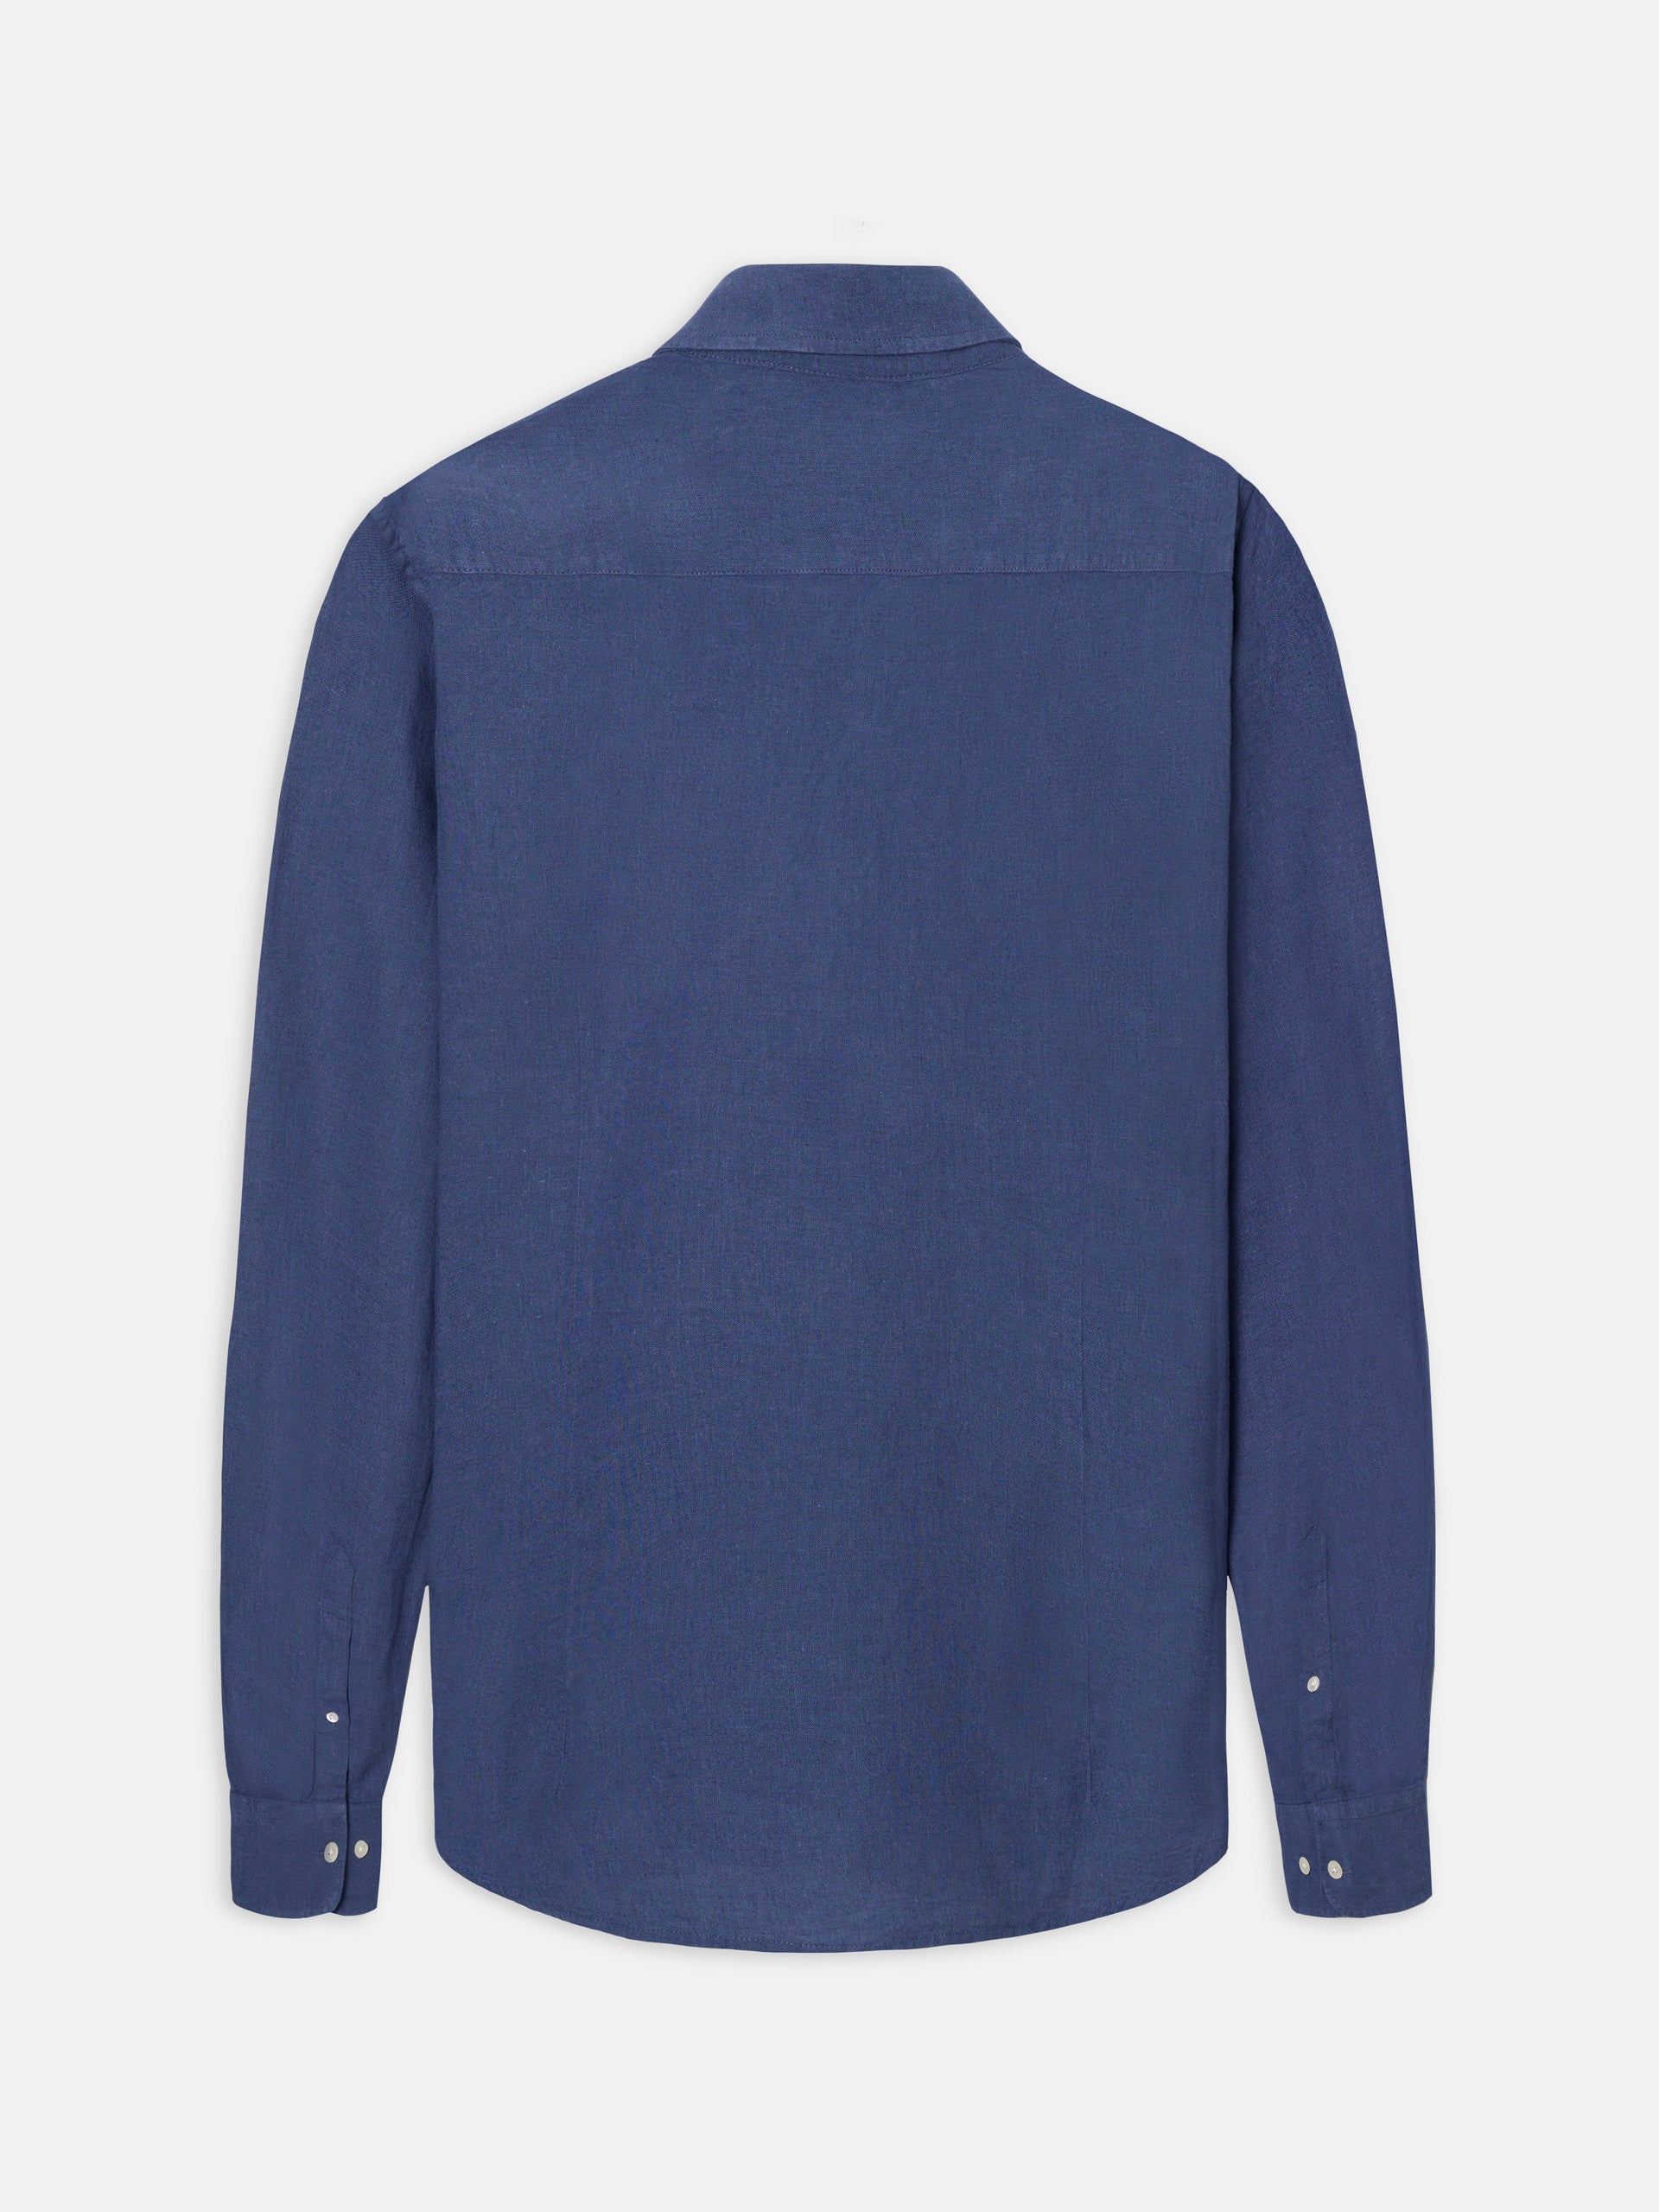 Camisa sport silbon soft azul indigo